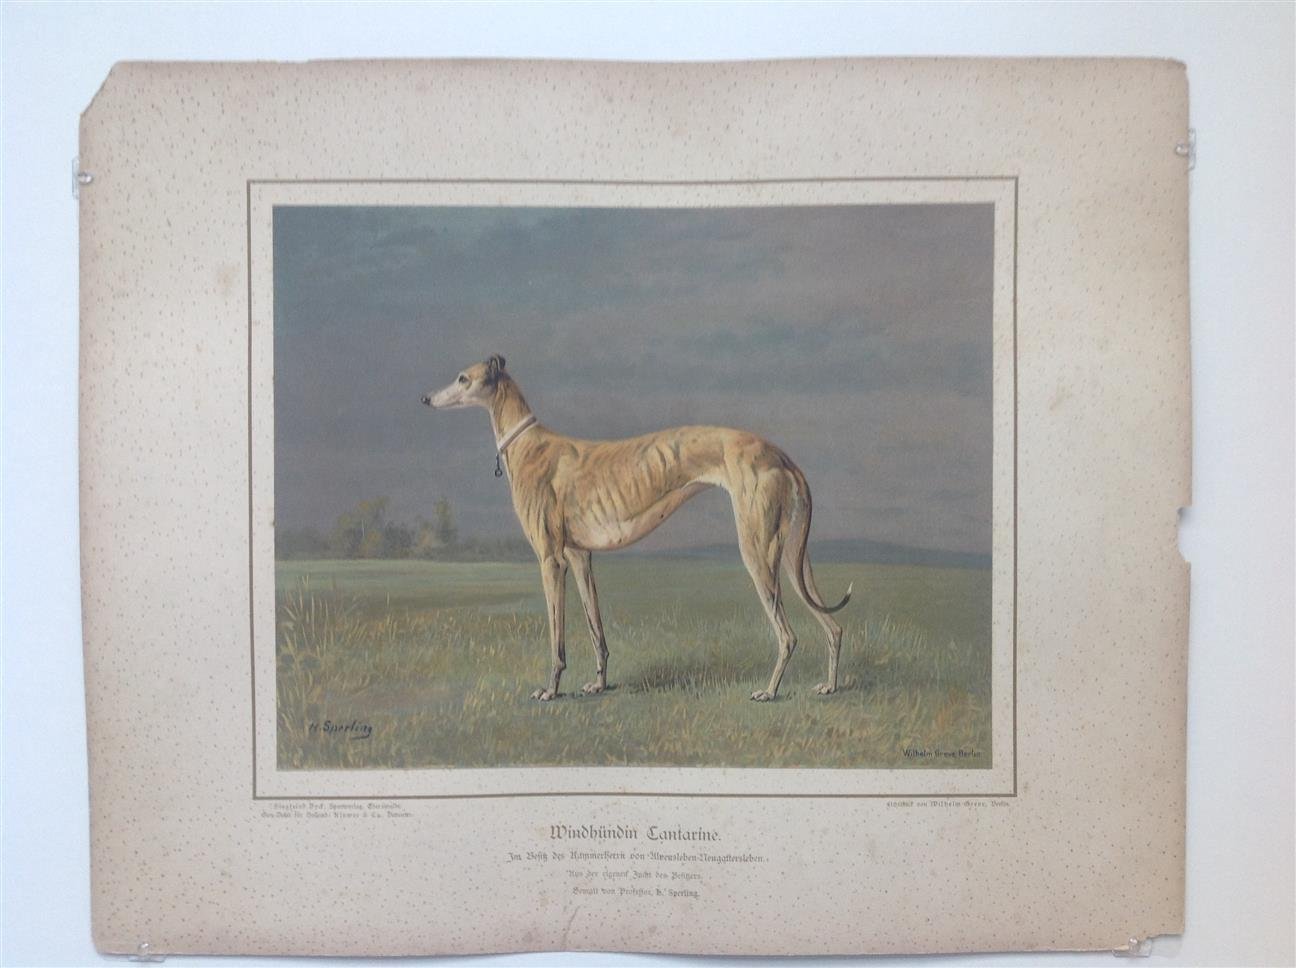 H. Sperling - lithograaf : Wilhelm Greve - (DECORATIEVE PRENT,  LITHO - DECORATIVE PRINT, LITHOGRAPH -) Rashond - Windhond / greyhound dog